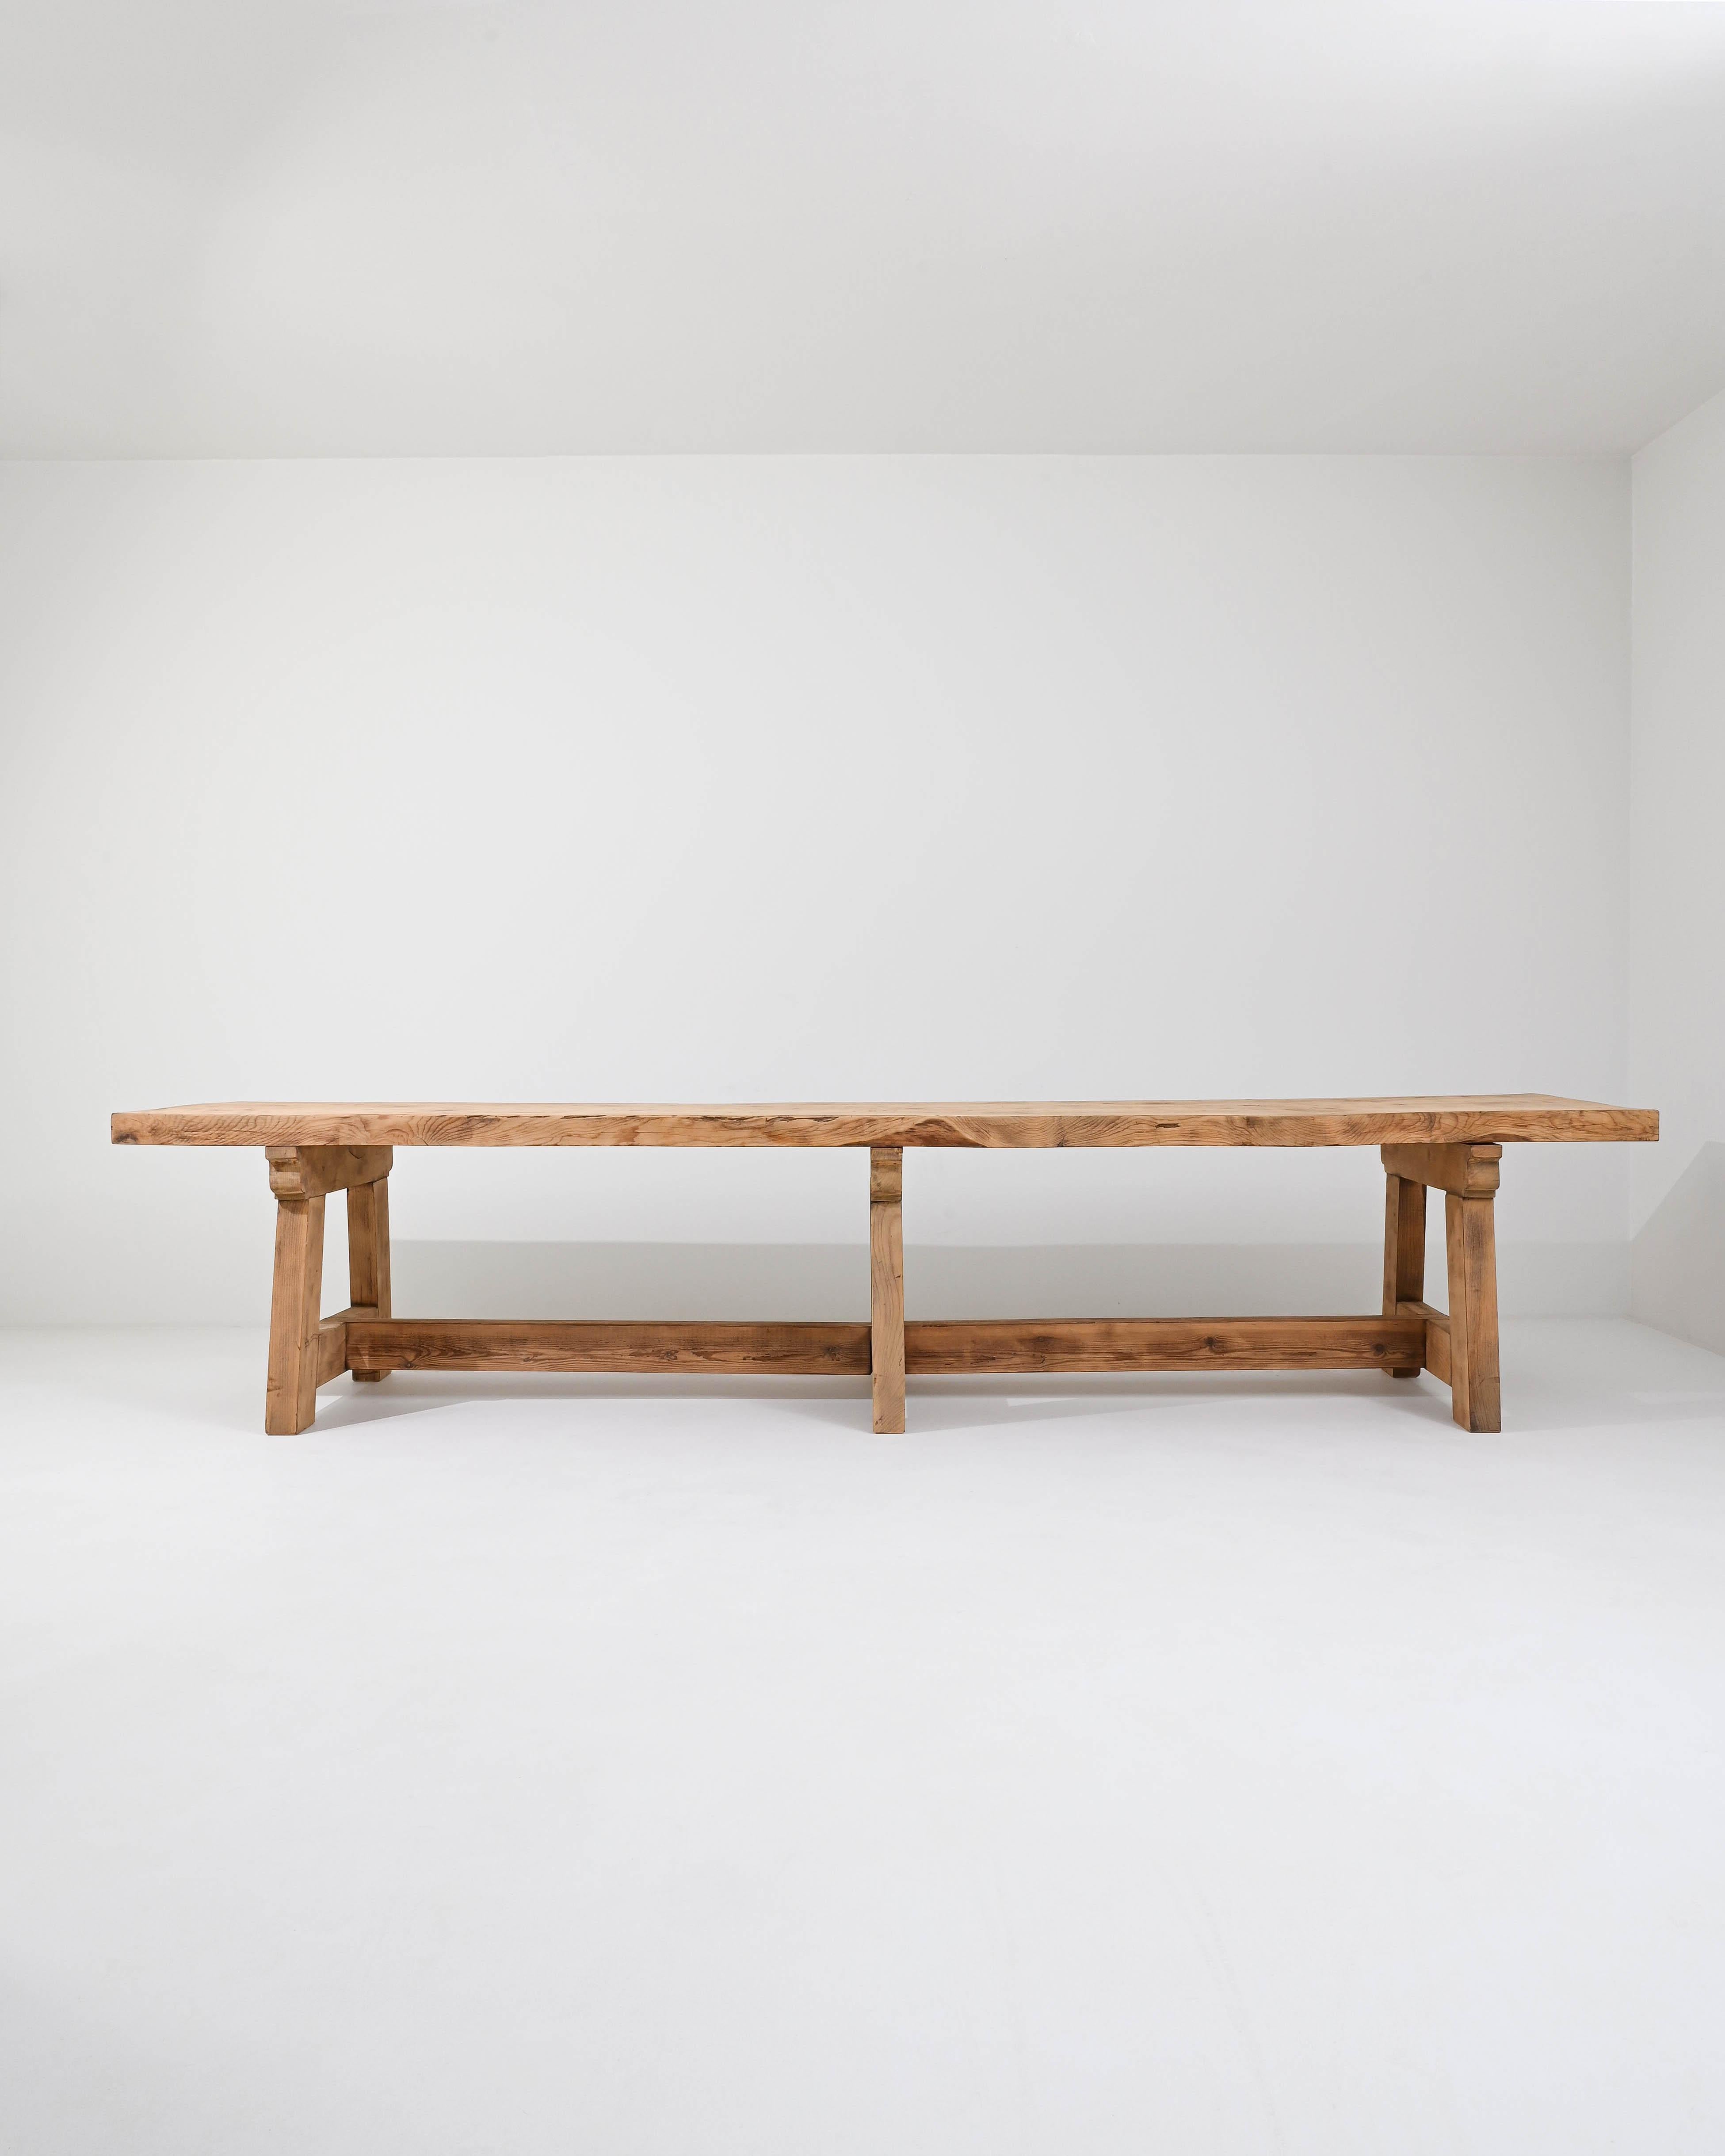 Ein Esstisch aus Holz, hergestellt in Frankreich. Zwei schwindelerregend dicke Holzbretter verbinden sich zu einer massiven Platte, aus der die strapazierte Tischplatte besteht. Die gewichtigen Beine und Keilrahmen bilden ein geometrisch